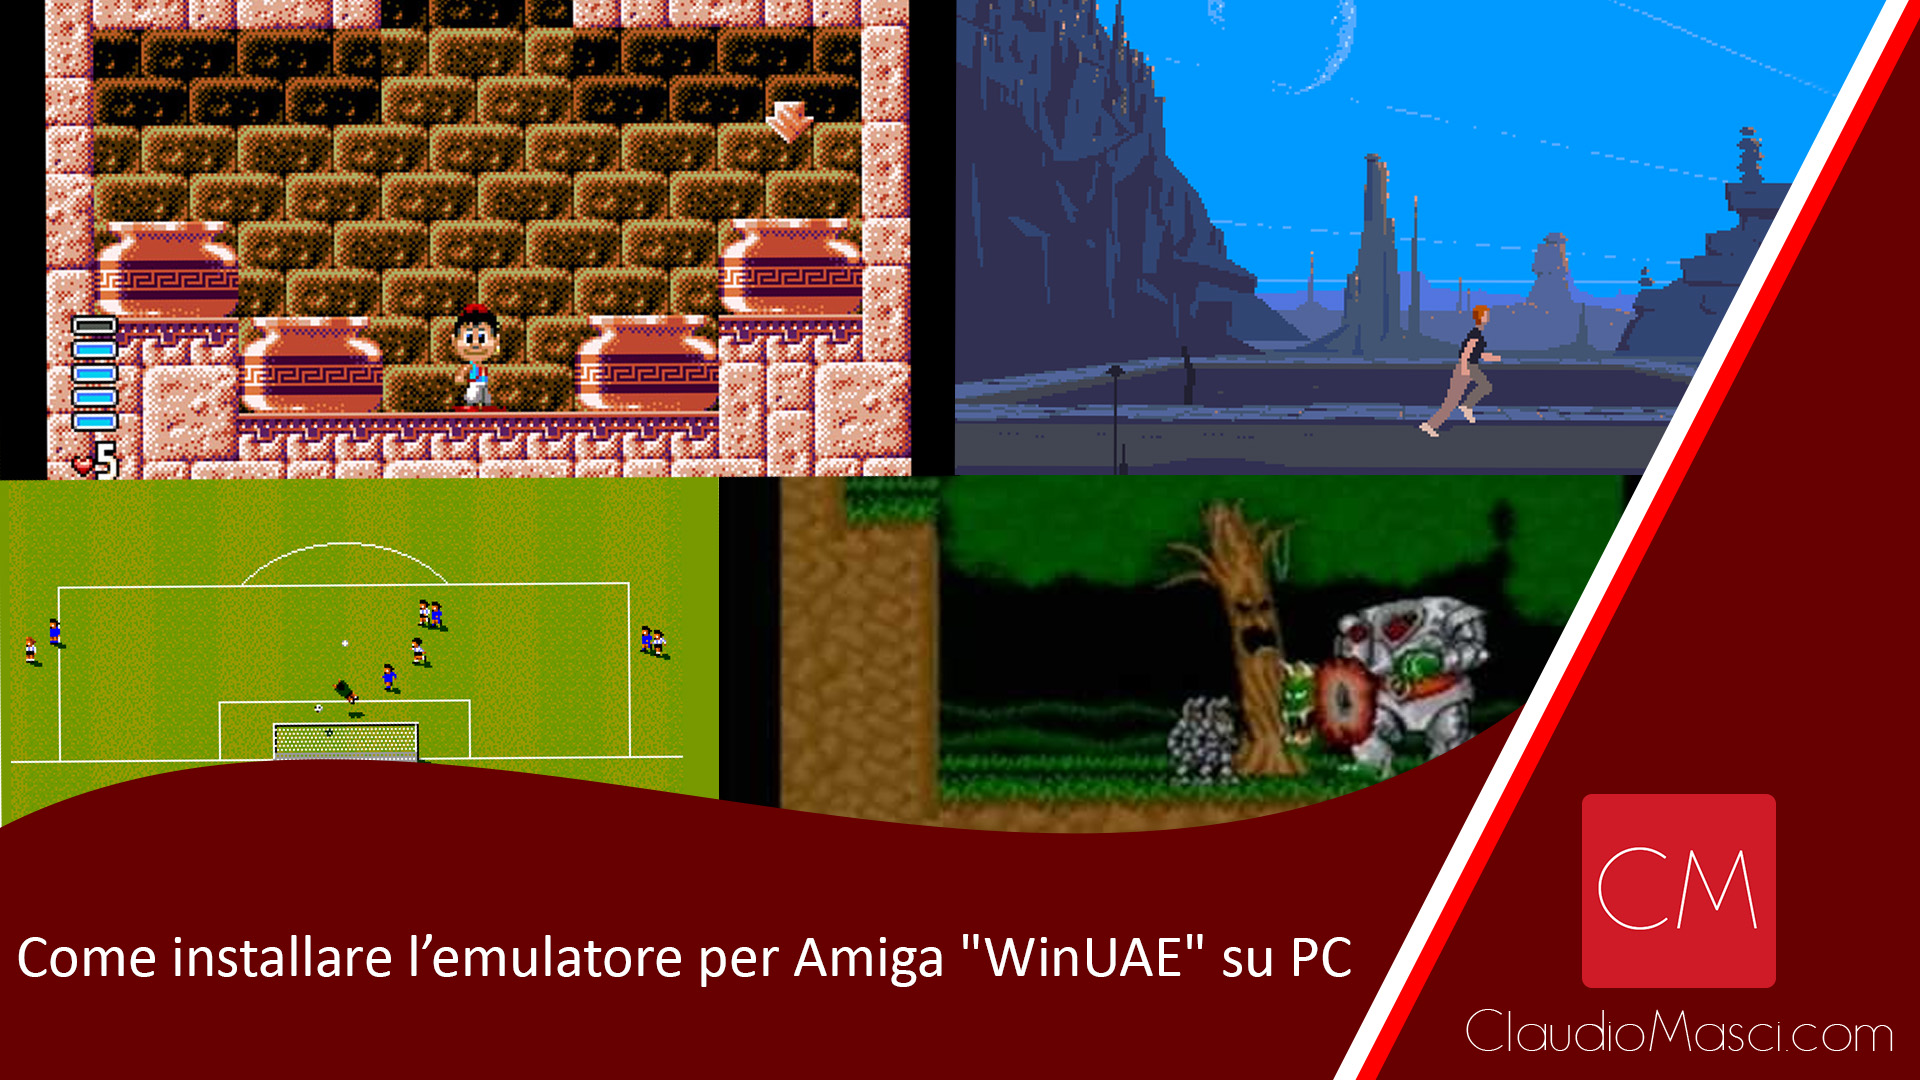 Come installare l’emulatore per Amiga “WinUAE” su PC